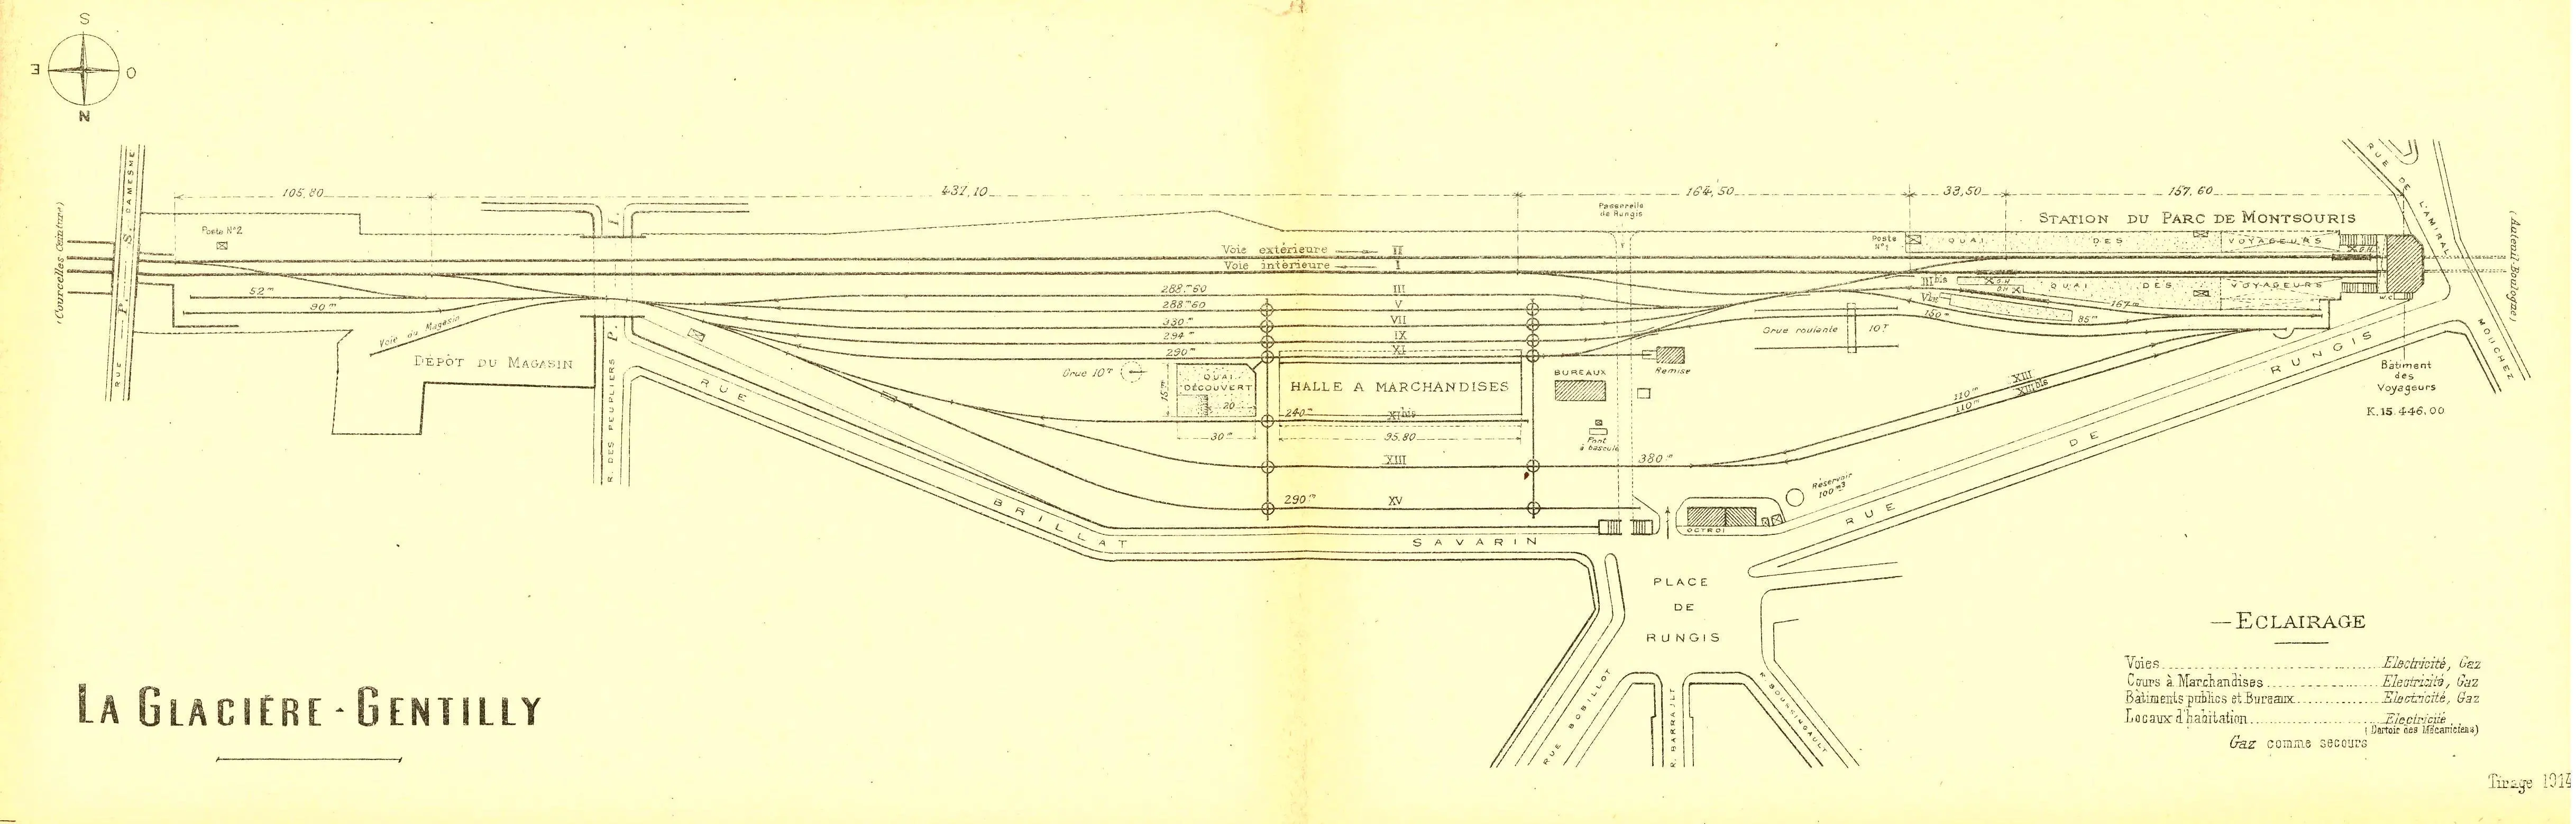 Plan des installations de la gare aux marchandises de la Glacière-Gentilly et de la station Parc Montsouris en 1914 